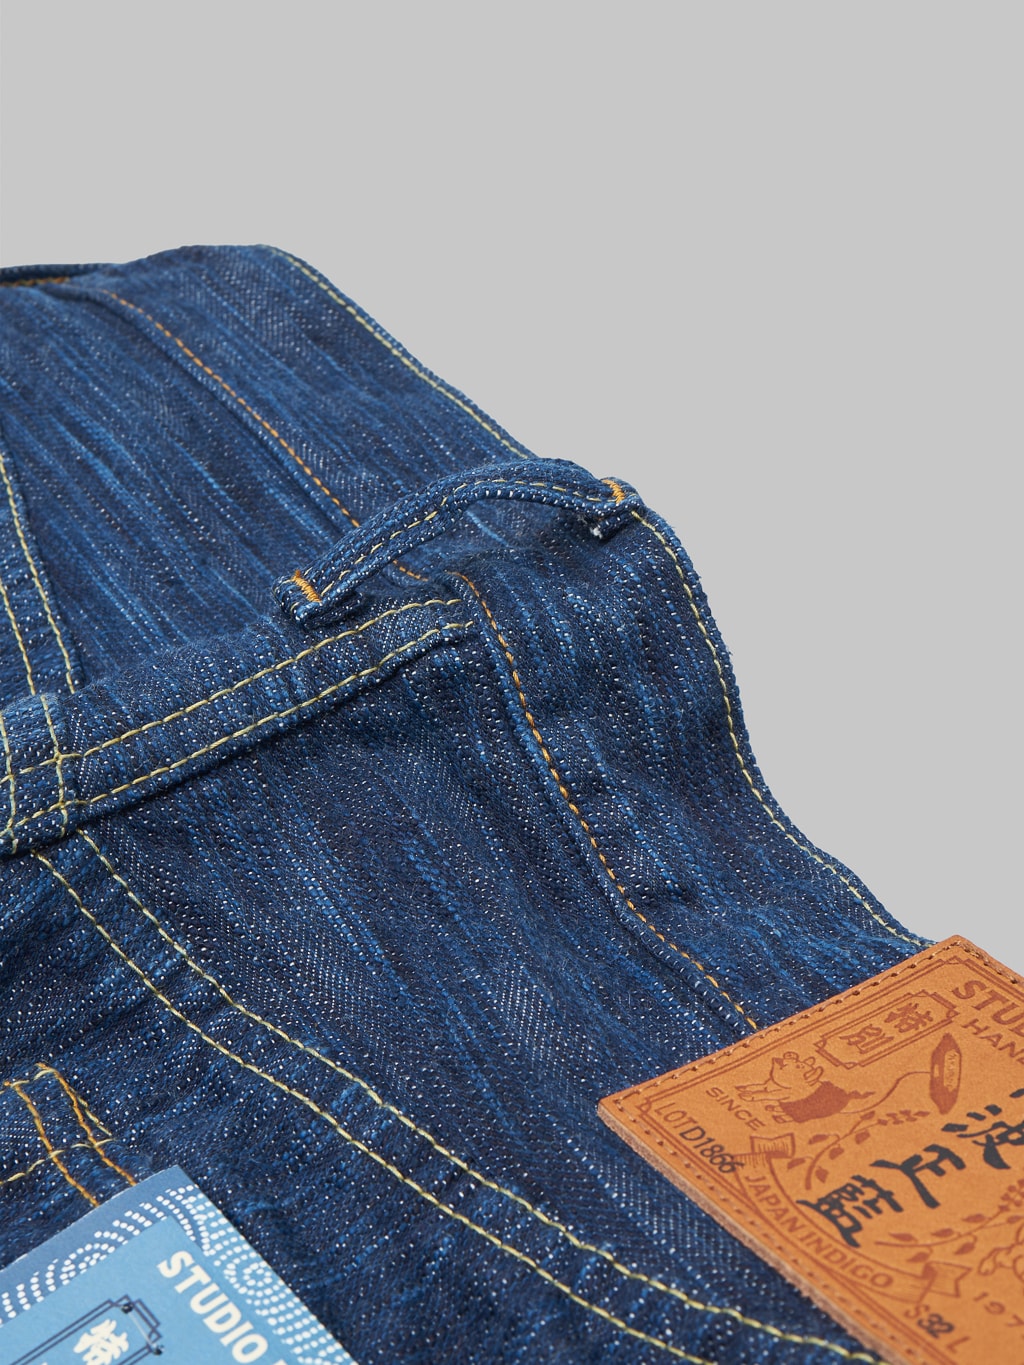 Studio dartisan tokushima awa shoai regular straight jeans belt loop detail